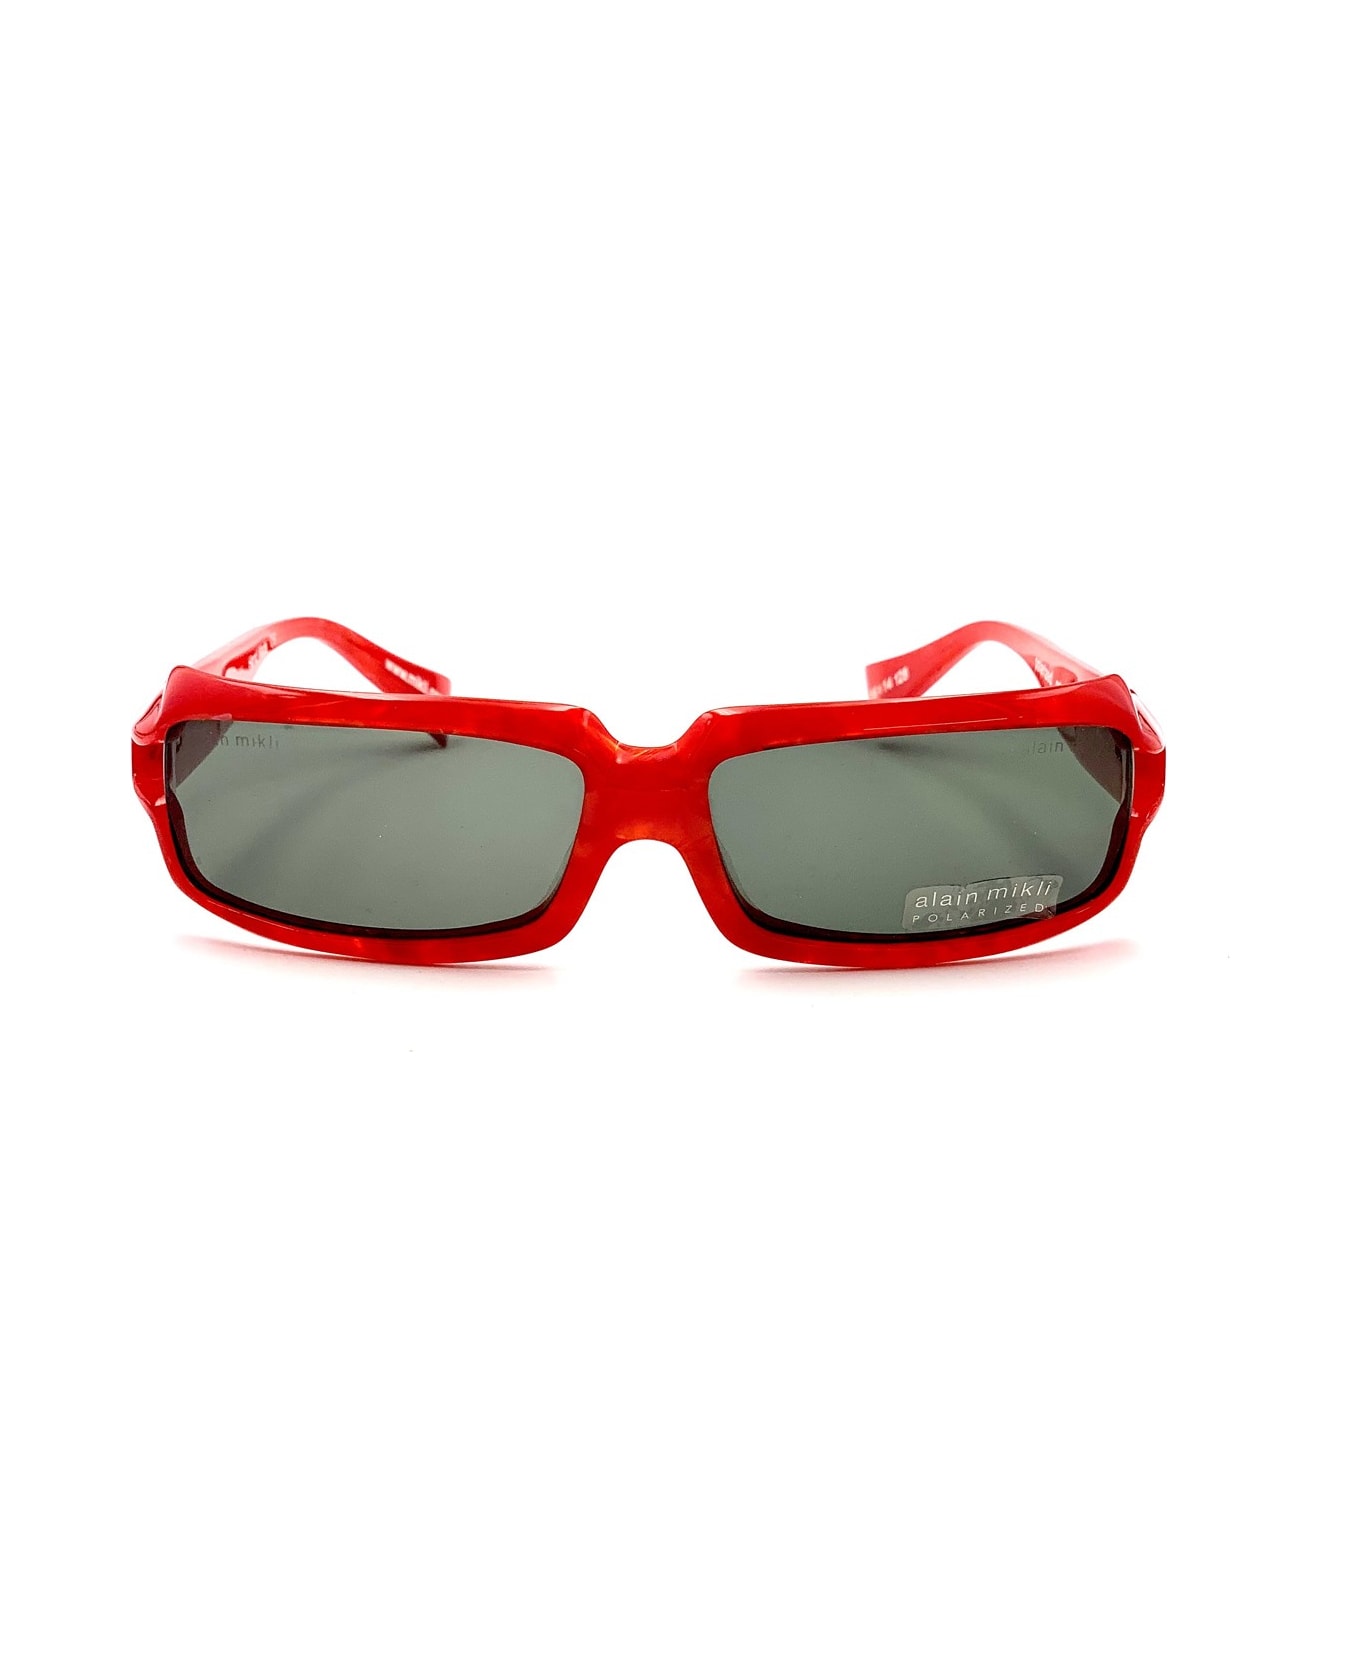 Alain Mikli A0488 Sunglasses - Rosso